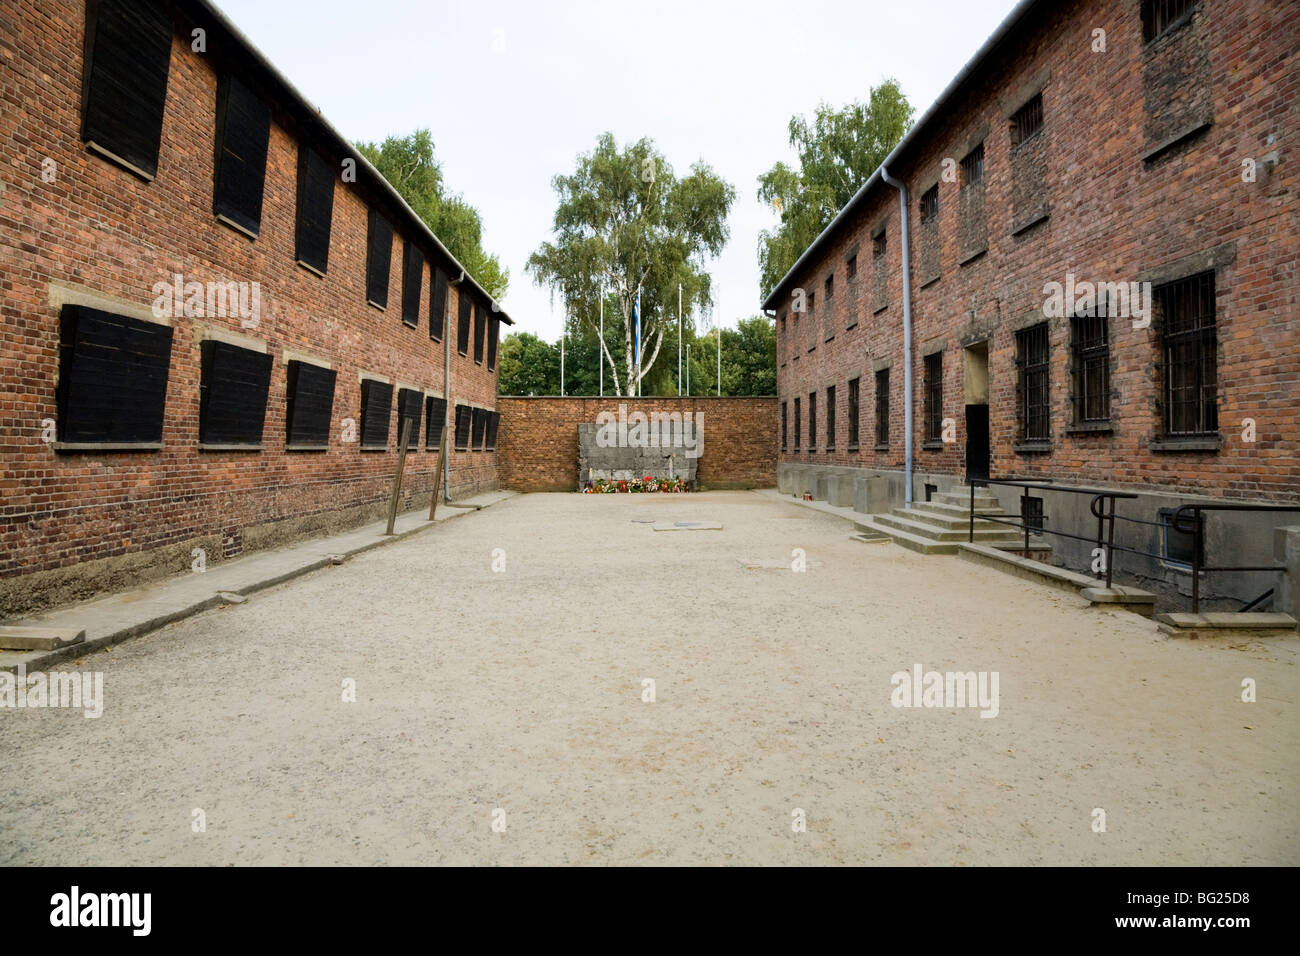 Ejecución patio entre bloques de alojamientos 10 11 donde los presos fueron fusilados / ejecutados por un pelotón de fusilamiento. Campo de concentración de Auschwitz. Polonia Foto de stock